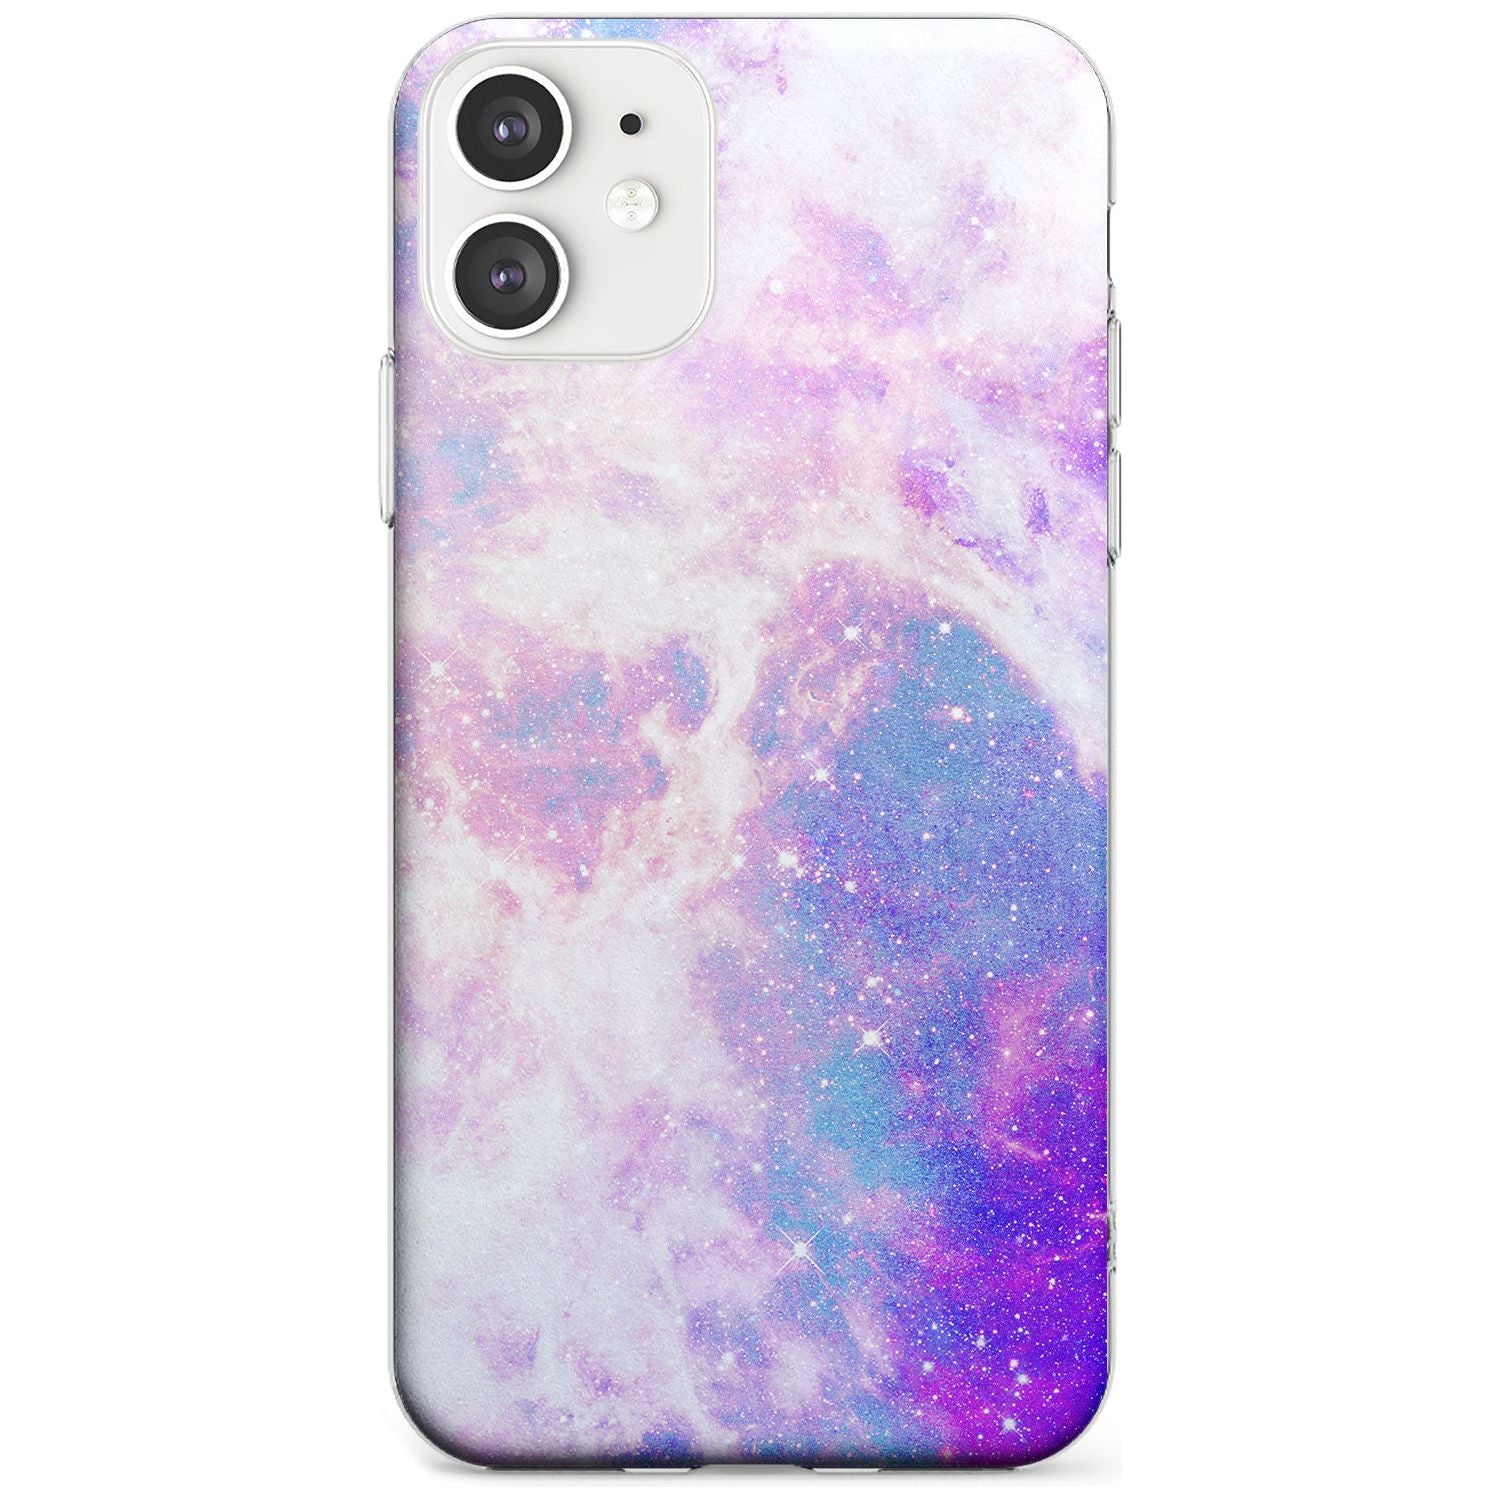 Purple & Blue Galaxy Pattern Design Slim TPU Phone Case for iPhone 11